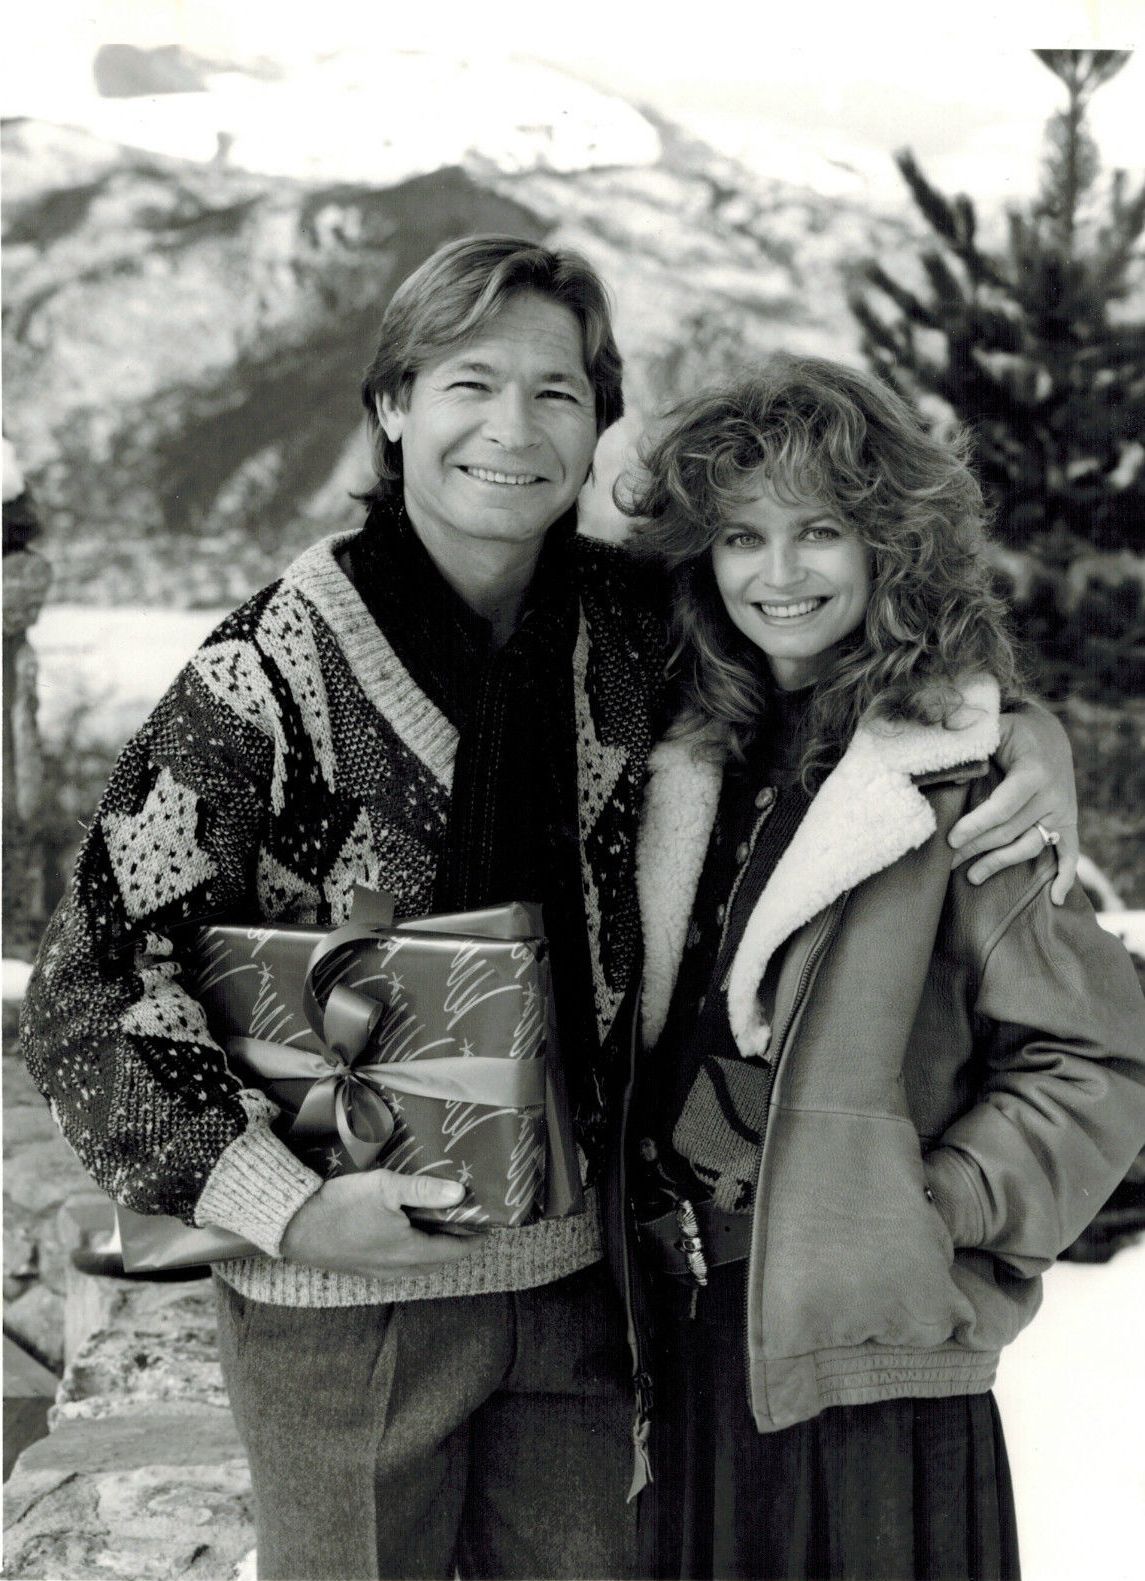 John and Cassandra Christmas in Aspen, 1988. John Denver